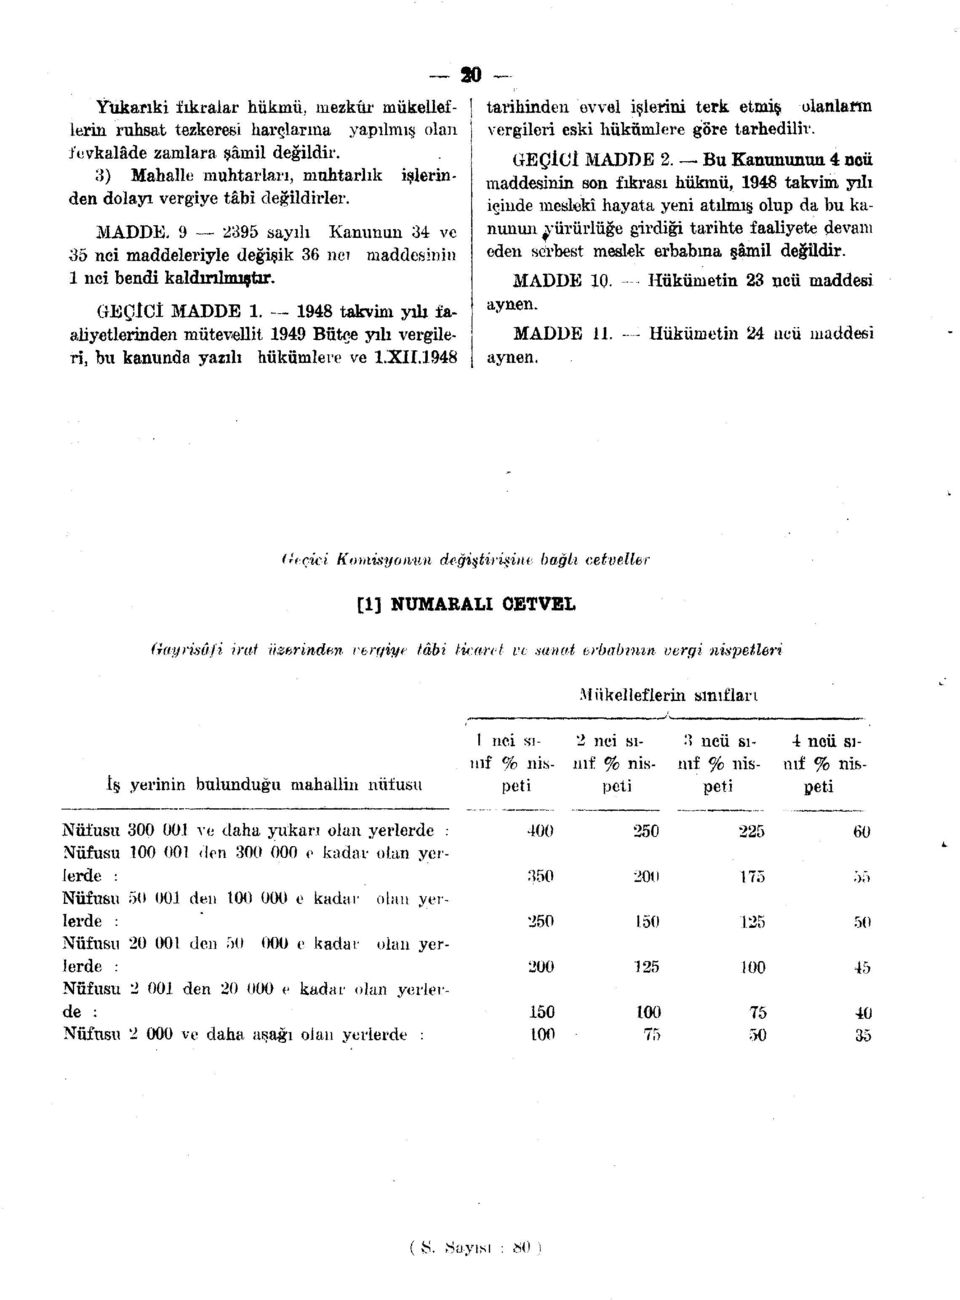 1948 takvim yılı faaliyetlerinden mütevellit 1949 Bütçe yılı vergileri, bu kanunda yazılı hükümlere ve 1X11.